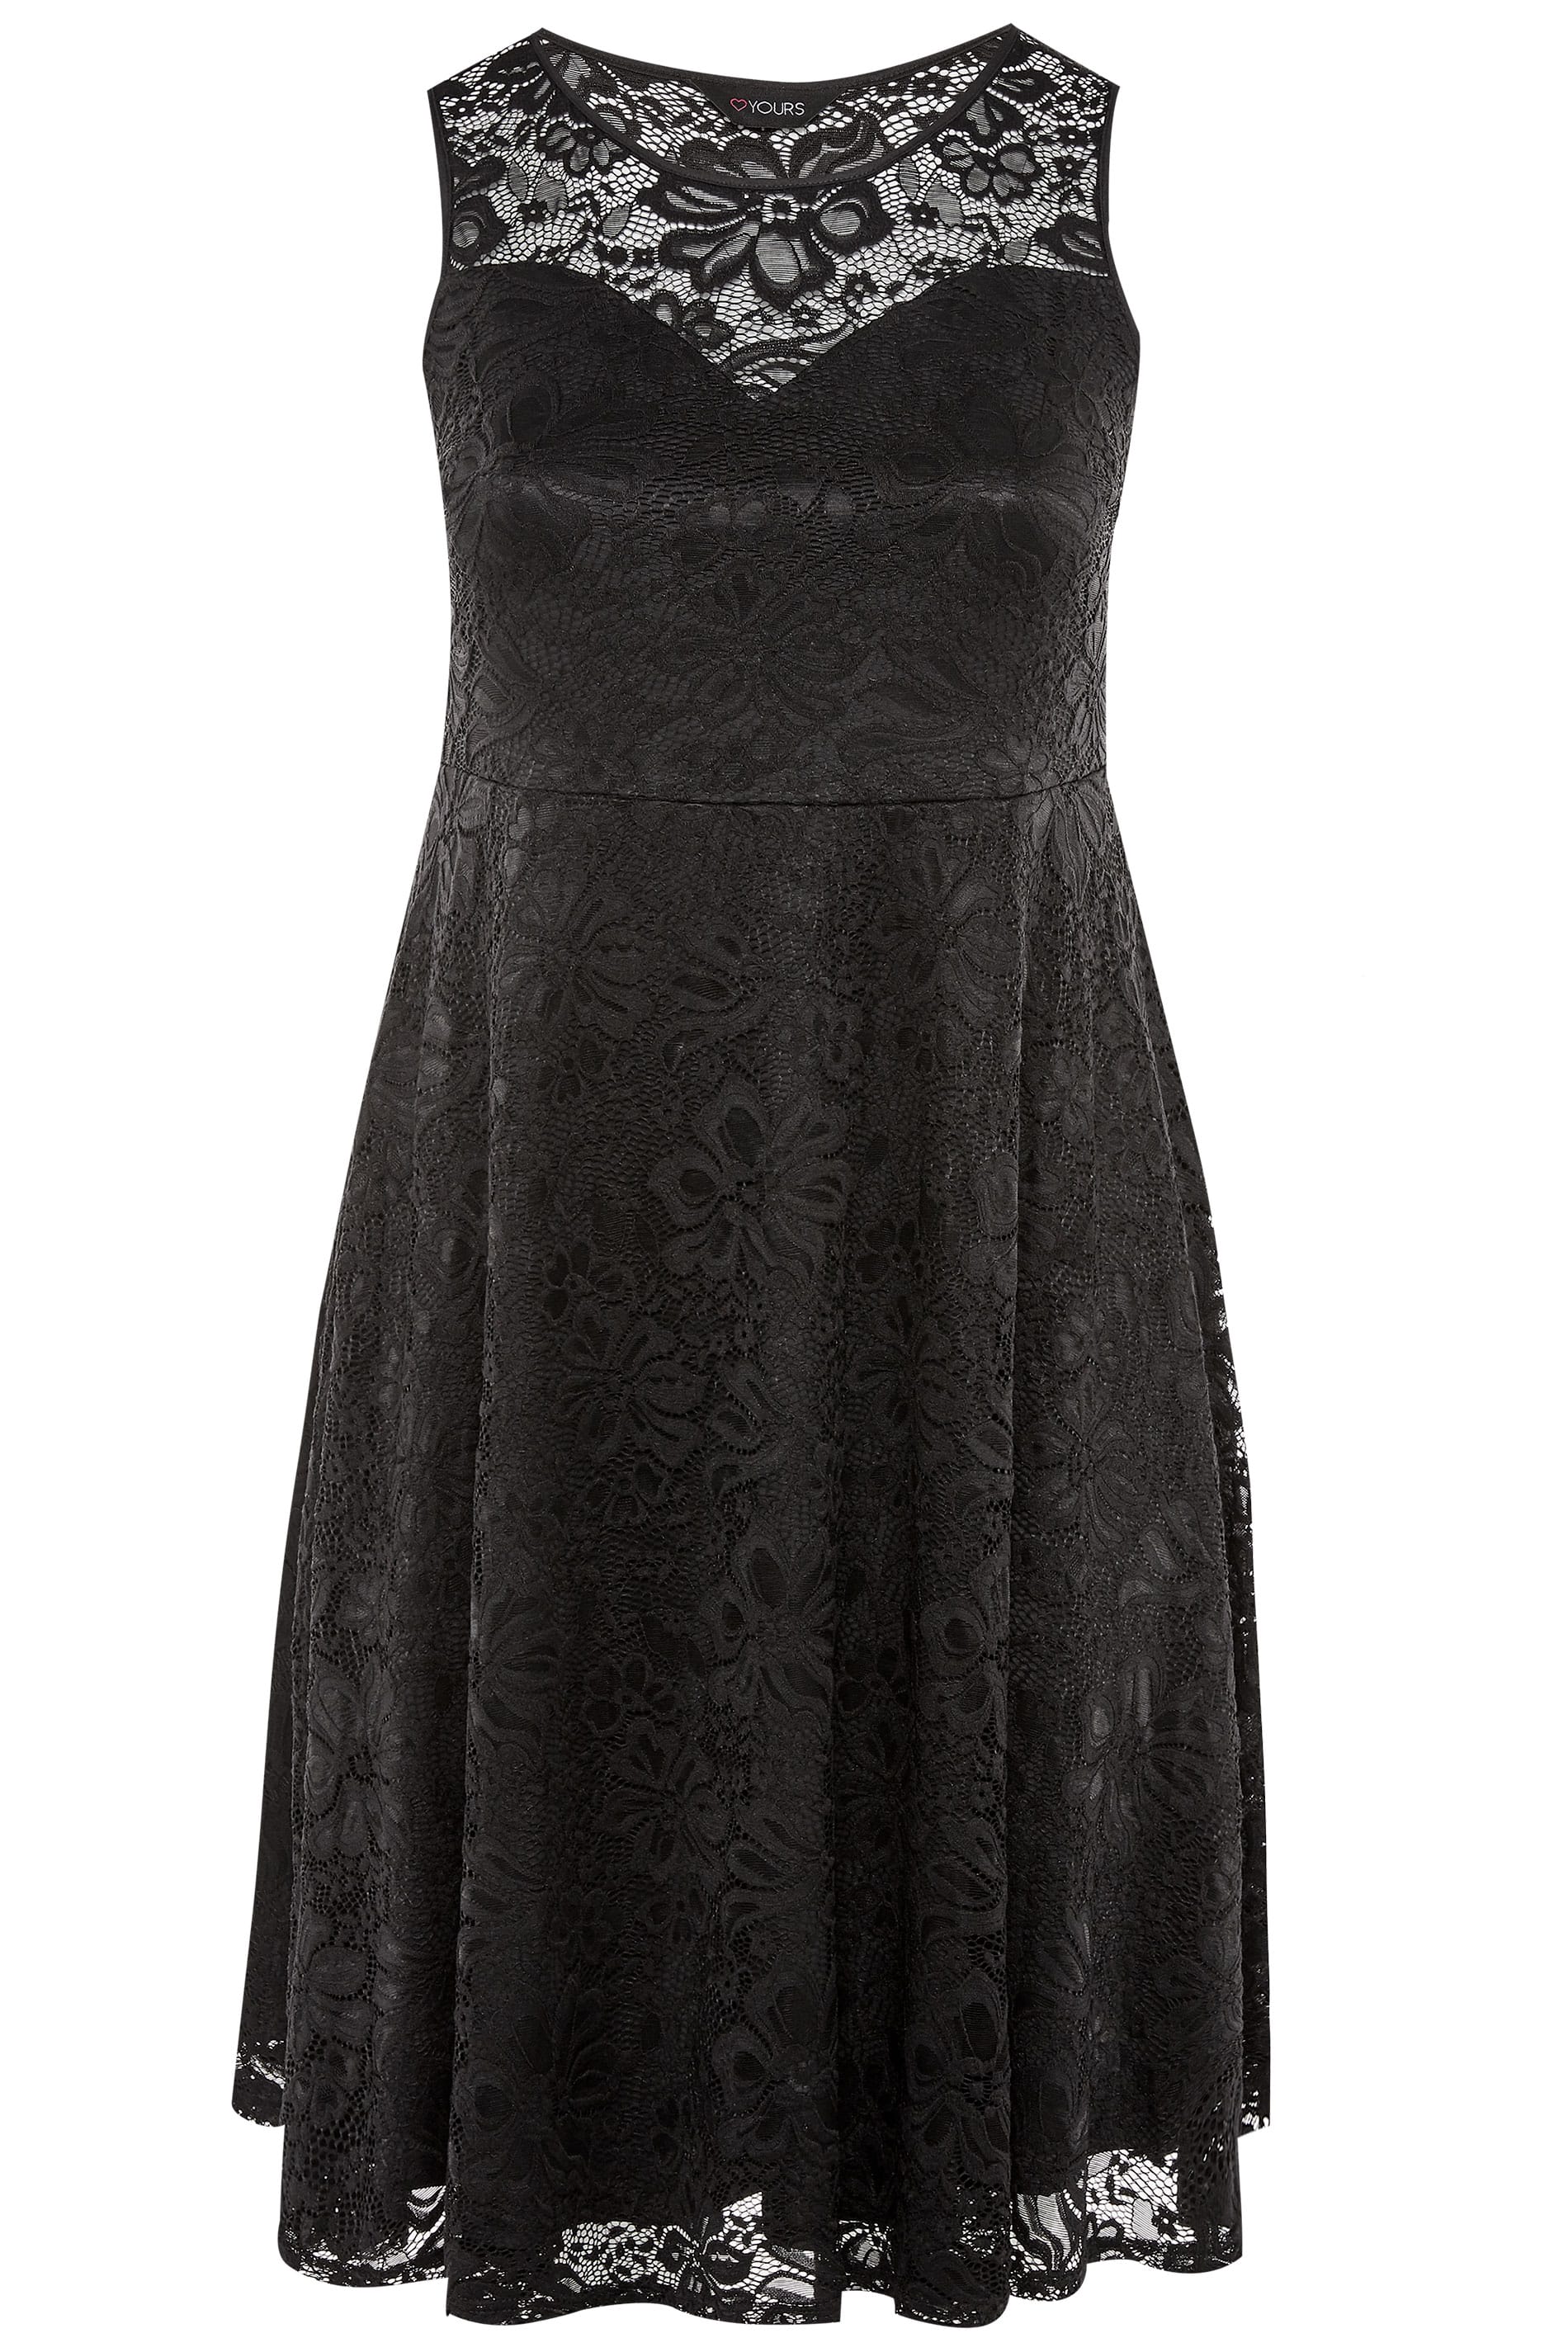 Black Sleeveless Lace Dress | Yours Clothing